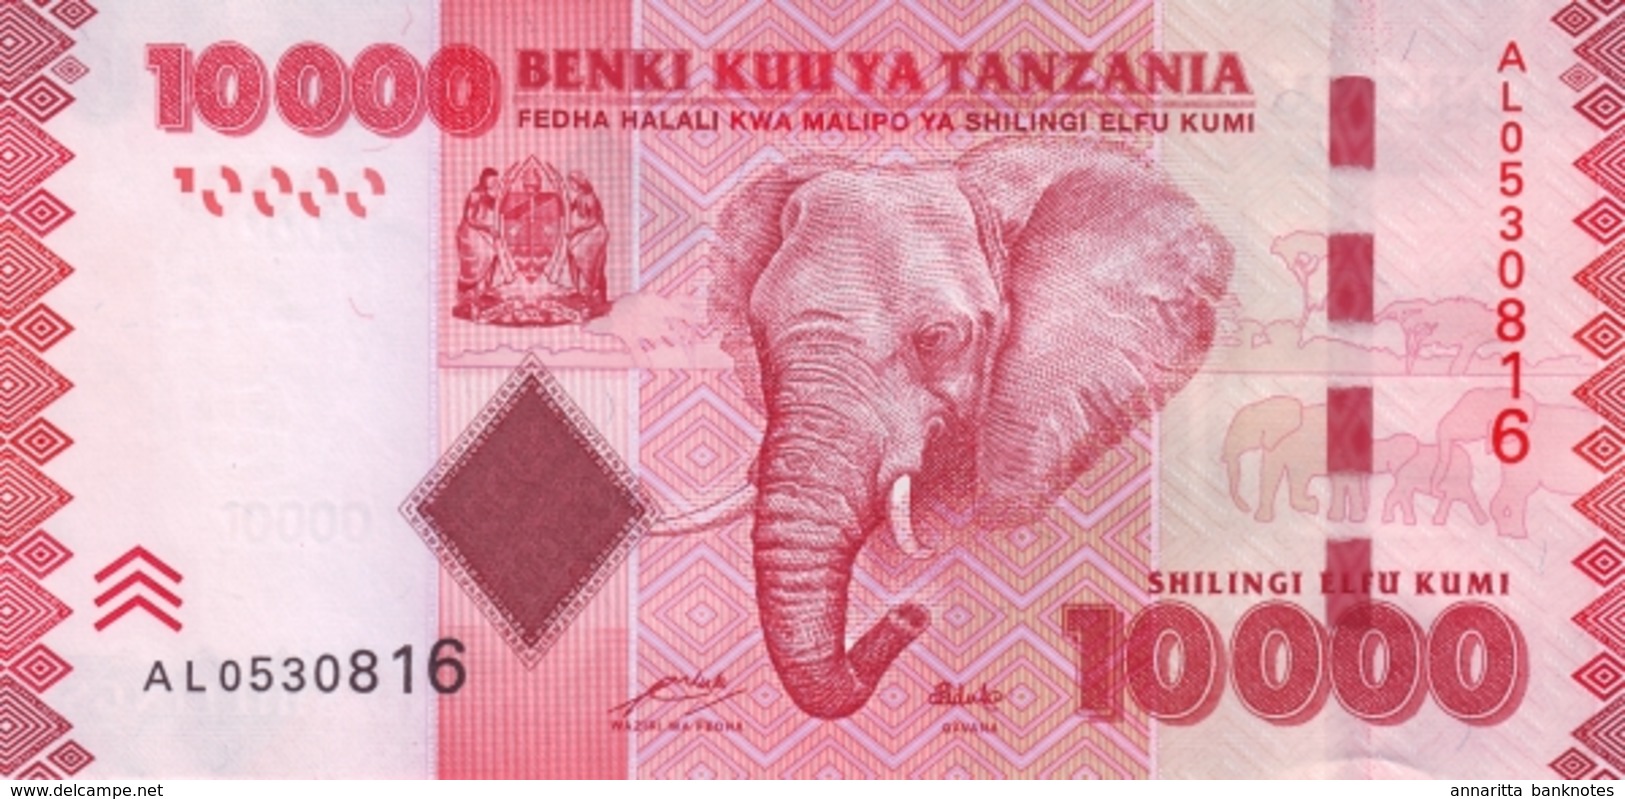 TANZANIA 10000 SHILLINGS ND (2011) P-44a UNC SIGN. MKULO & NDULU [TZ143a] - Tanzania